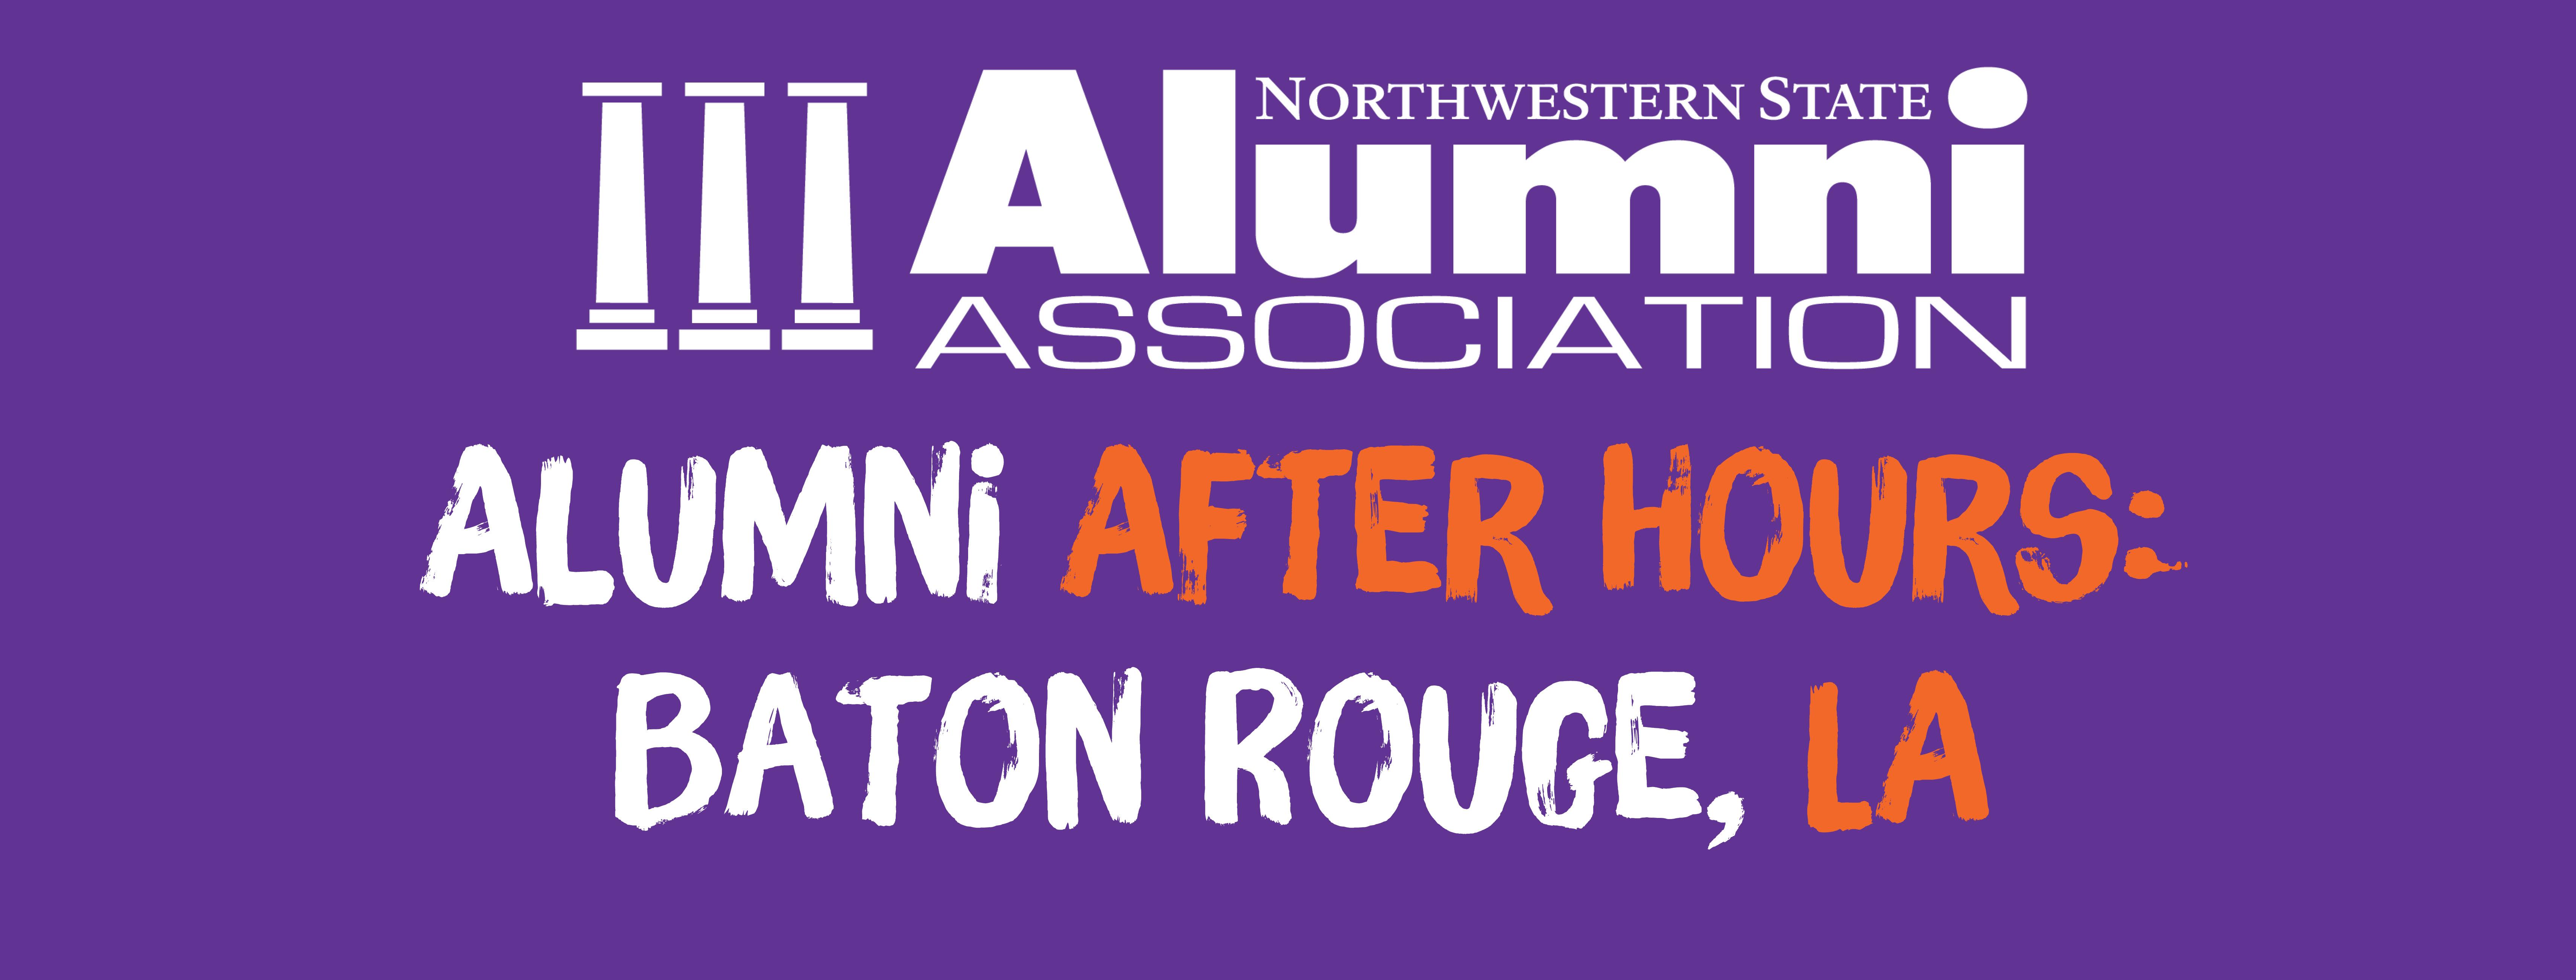 Alumni After Hours: Baton Rouge, LA